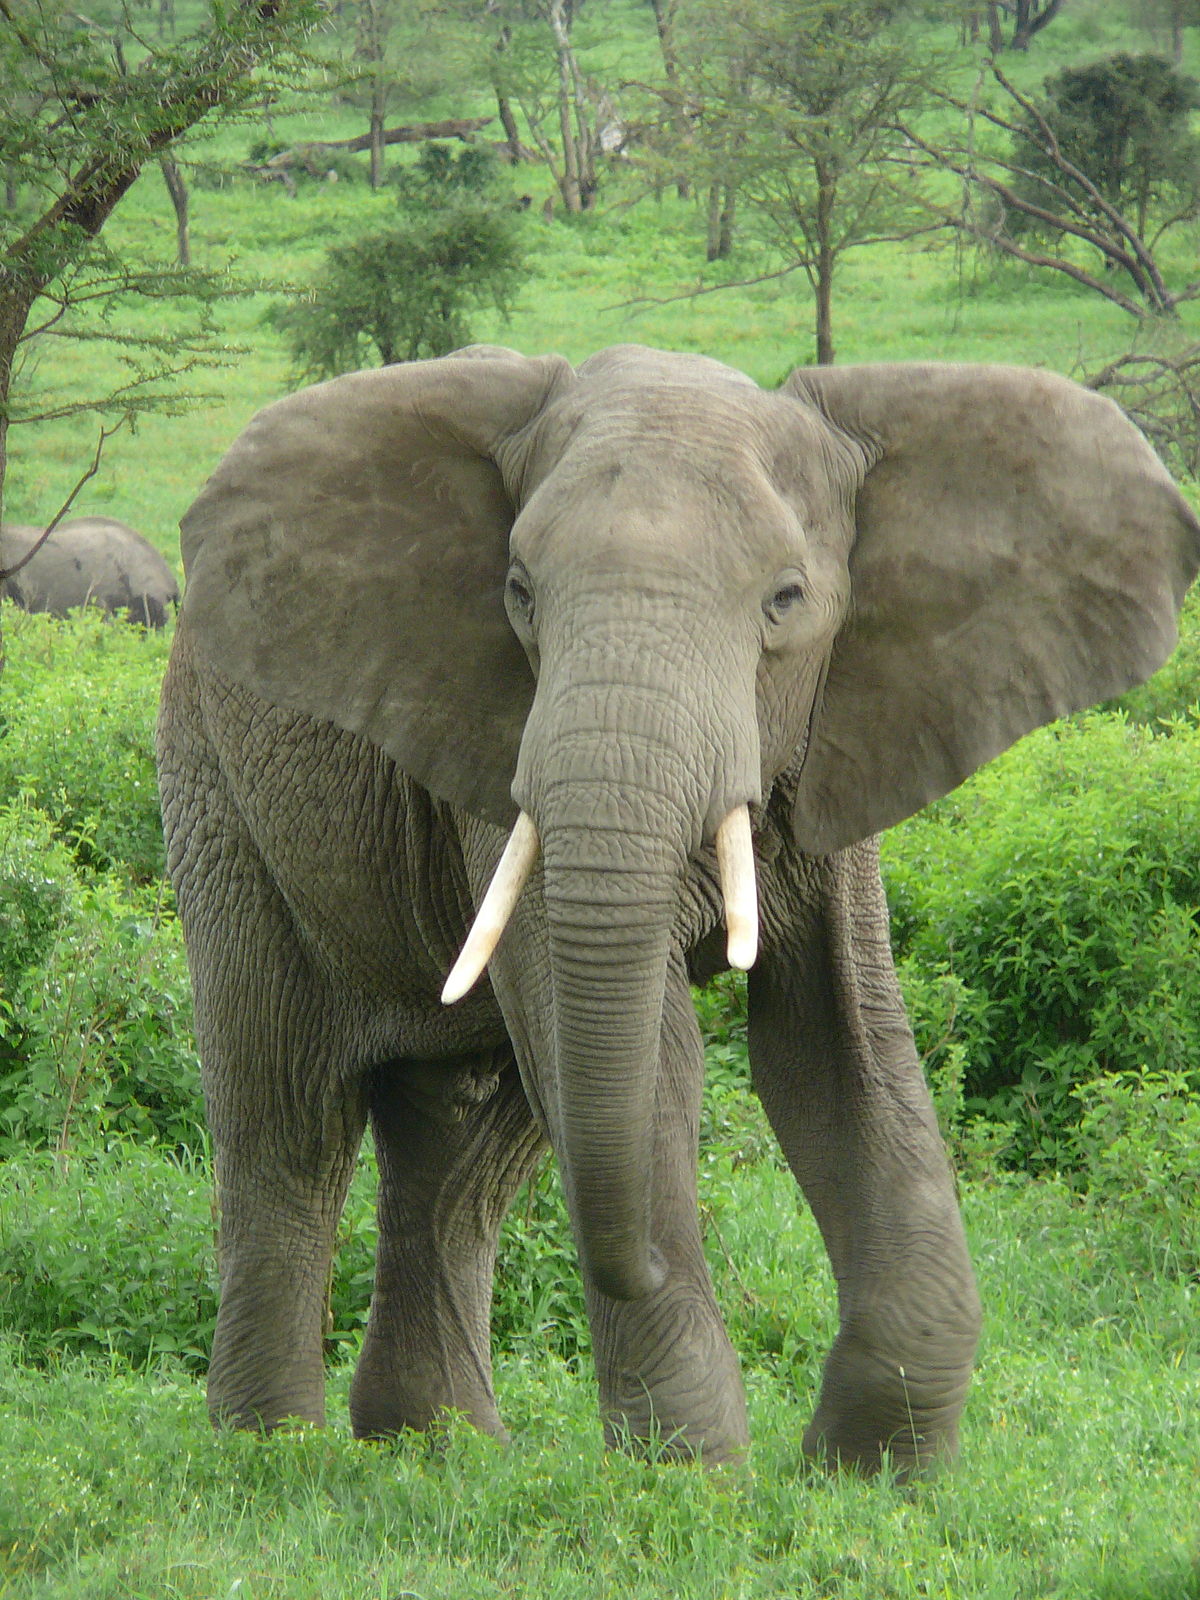 فيل مرح يستمتع بالانزلاق على الطين فى غابة مطيرة .. فيديو وصور